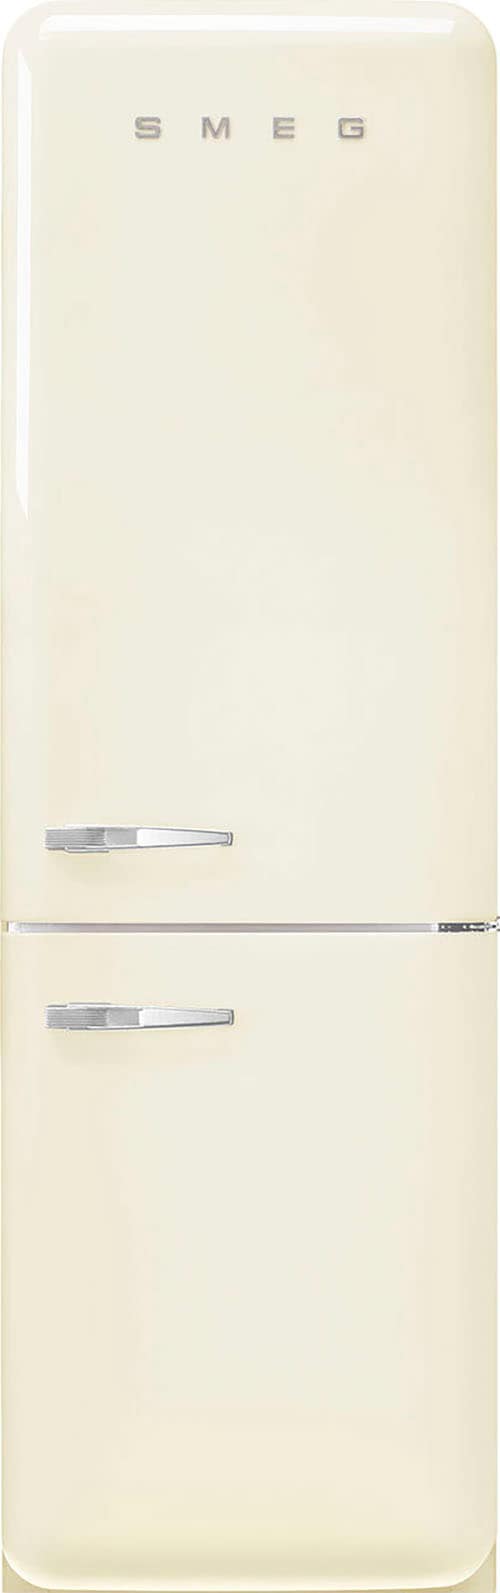 Smeg Kühl-/Gefrierkombination »FAB32«, FAB32RCR5, 196,8 cm hoch, 60,1 cm breit